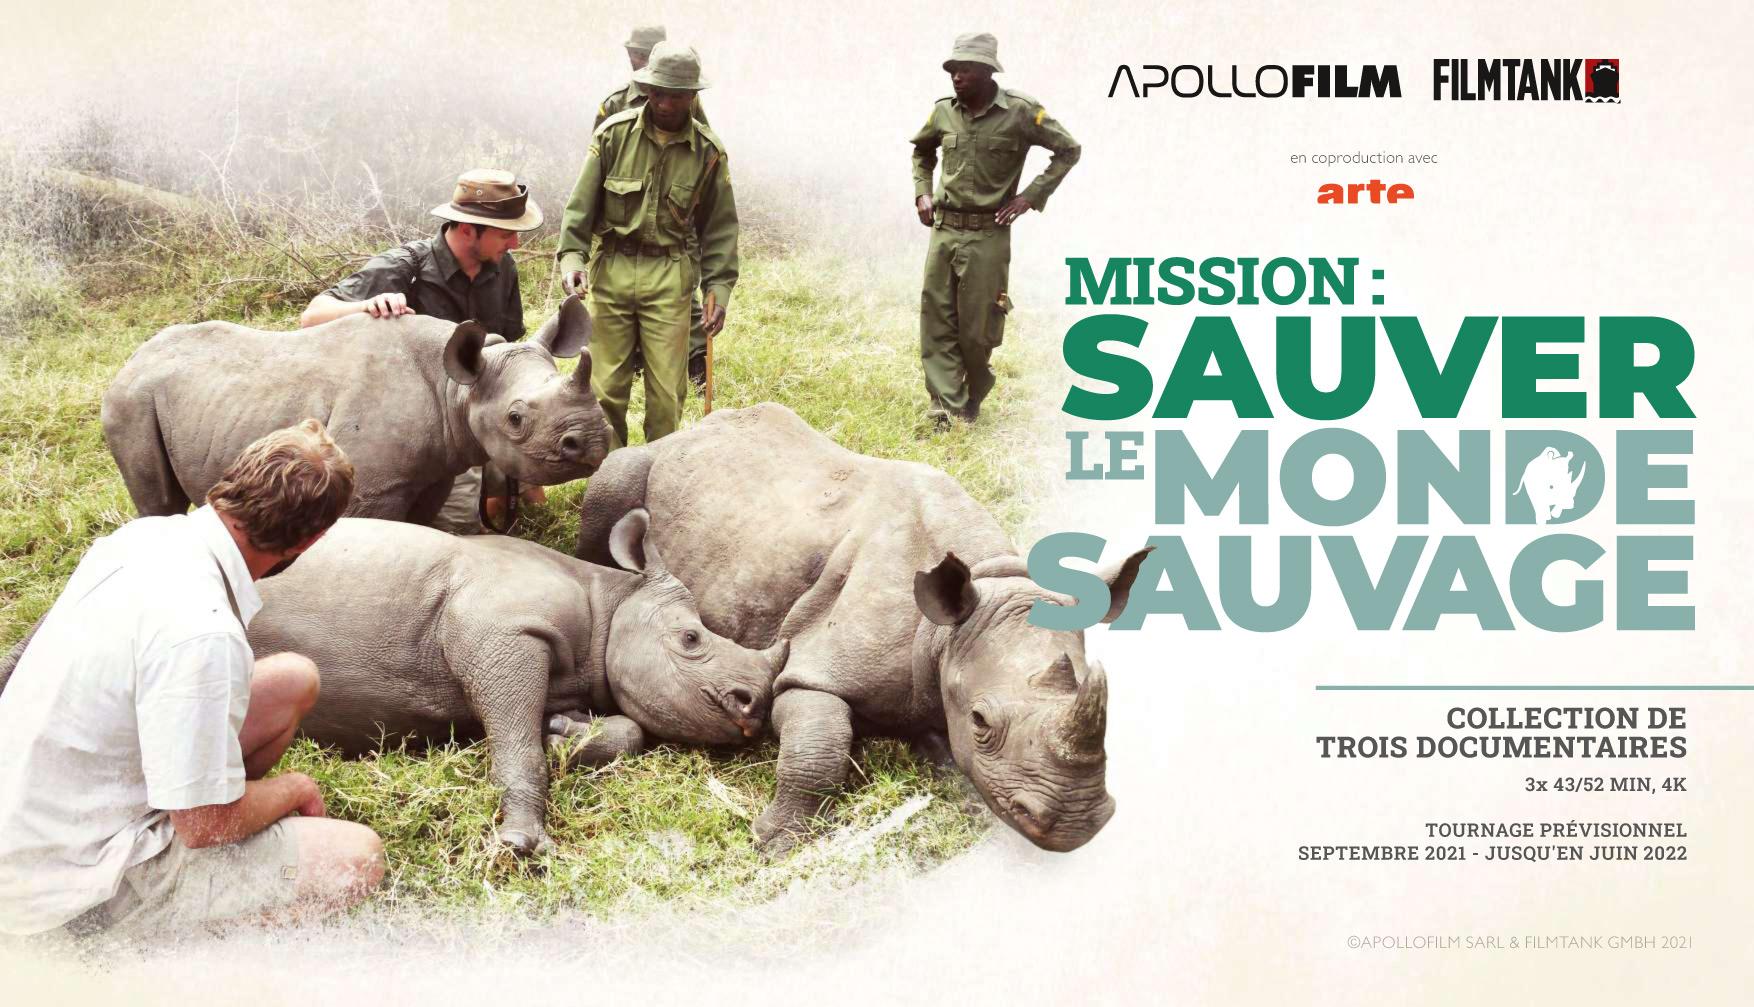 apollofilm mission: sauver le monde sauvage